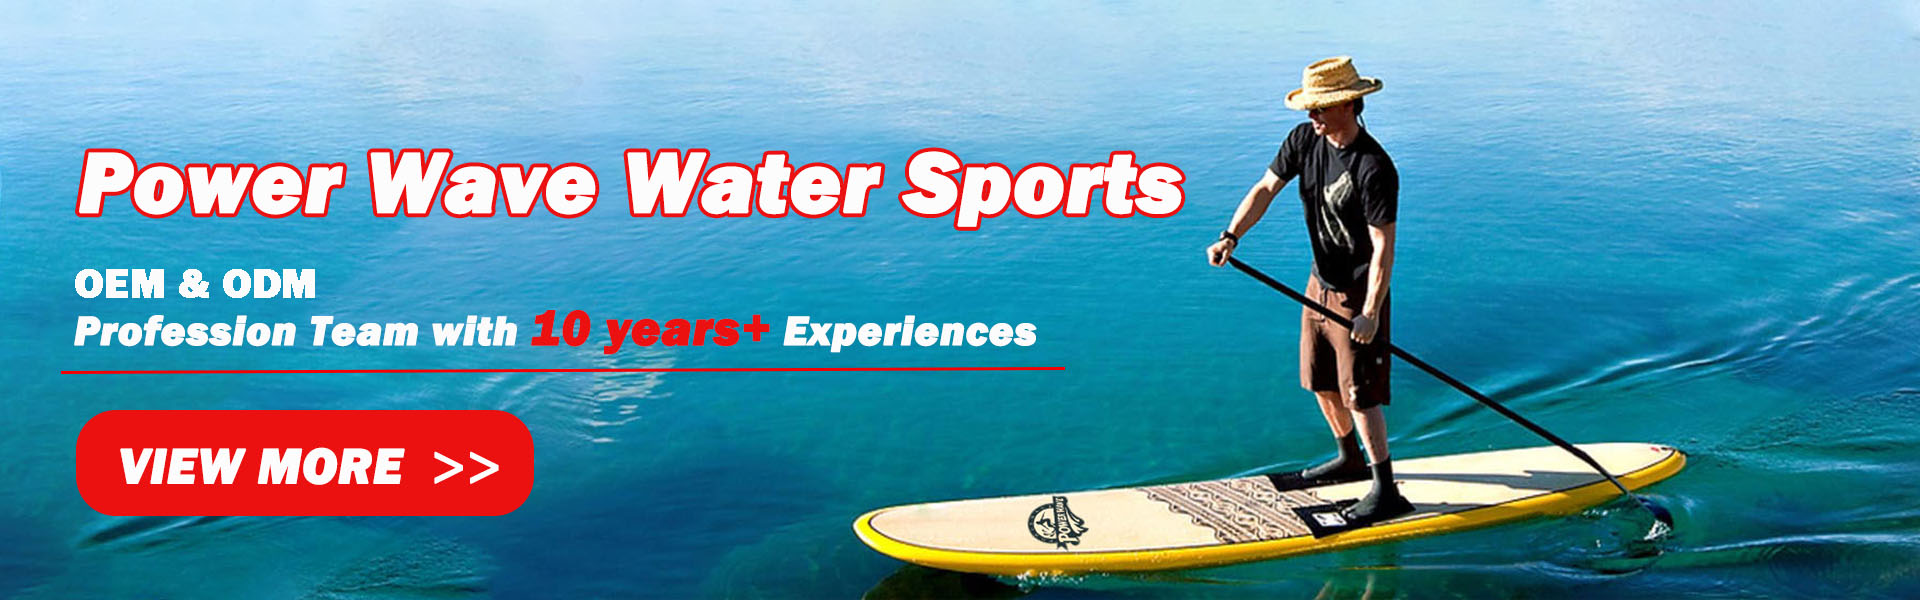 لوح ركوب الأمواج ، اللوحة الناعمة ، سوب,Power Wave Water Sports co.Ltd